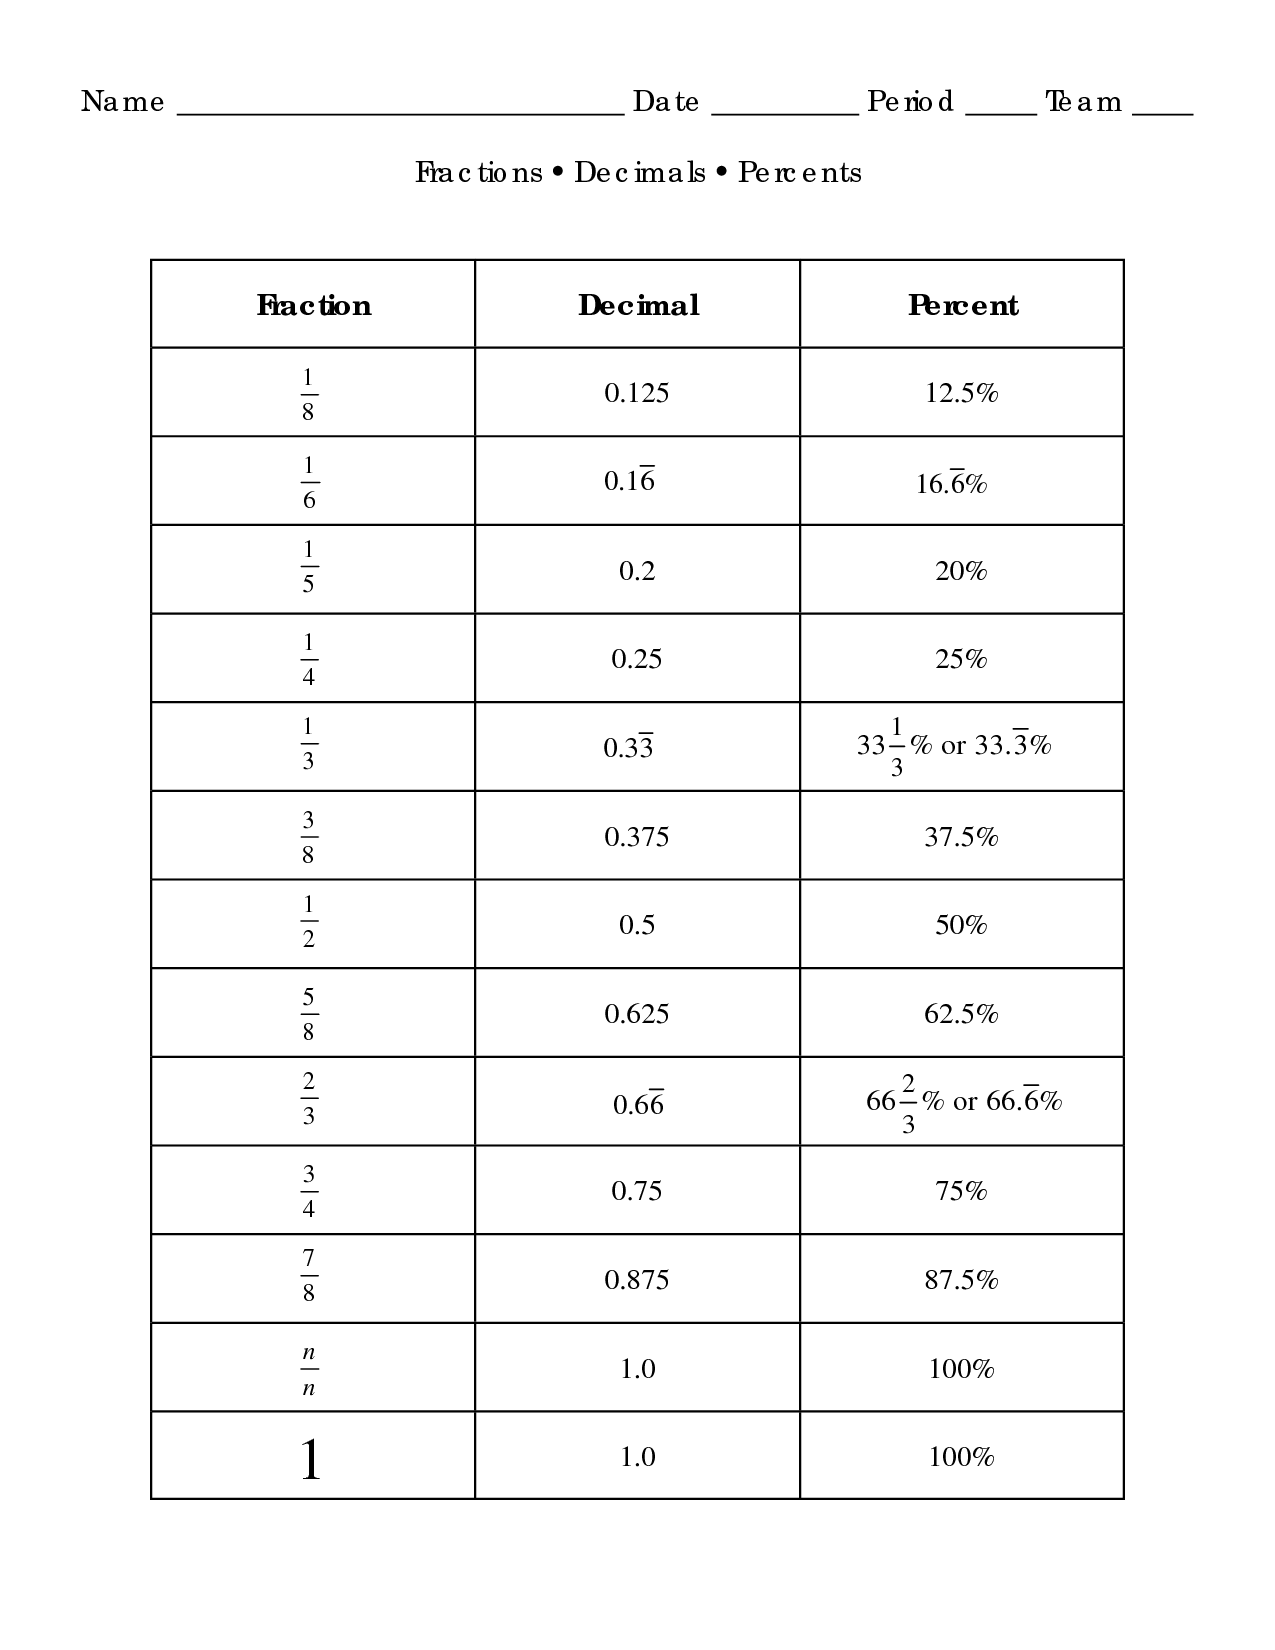 fractions-decimals-percents-worksheet